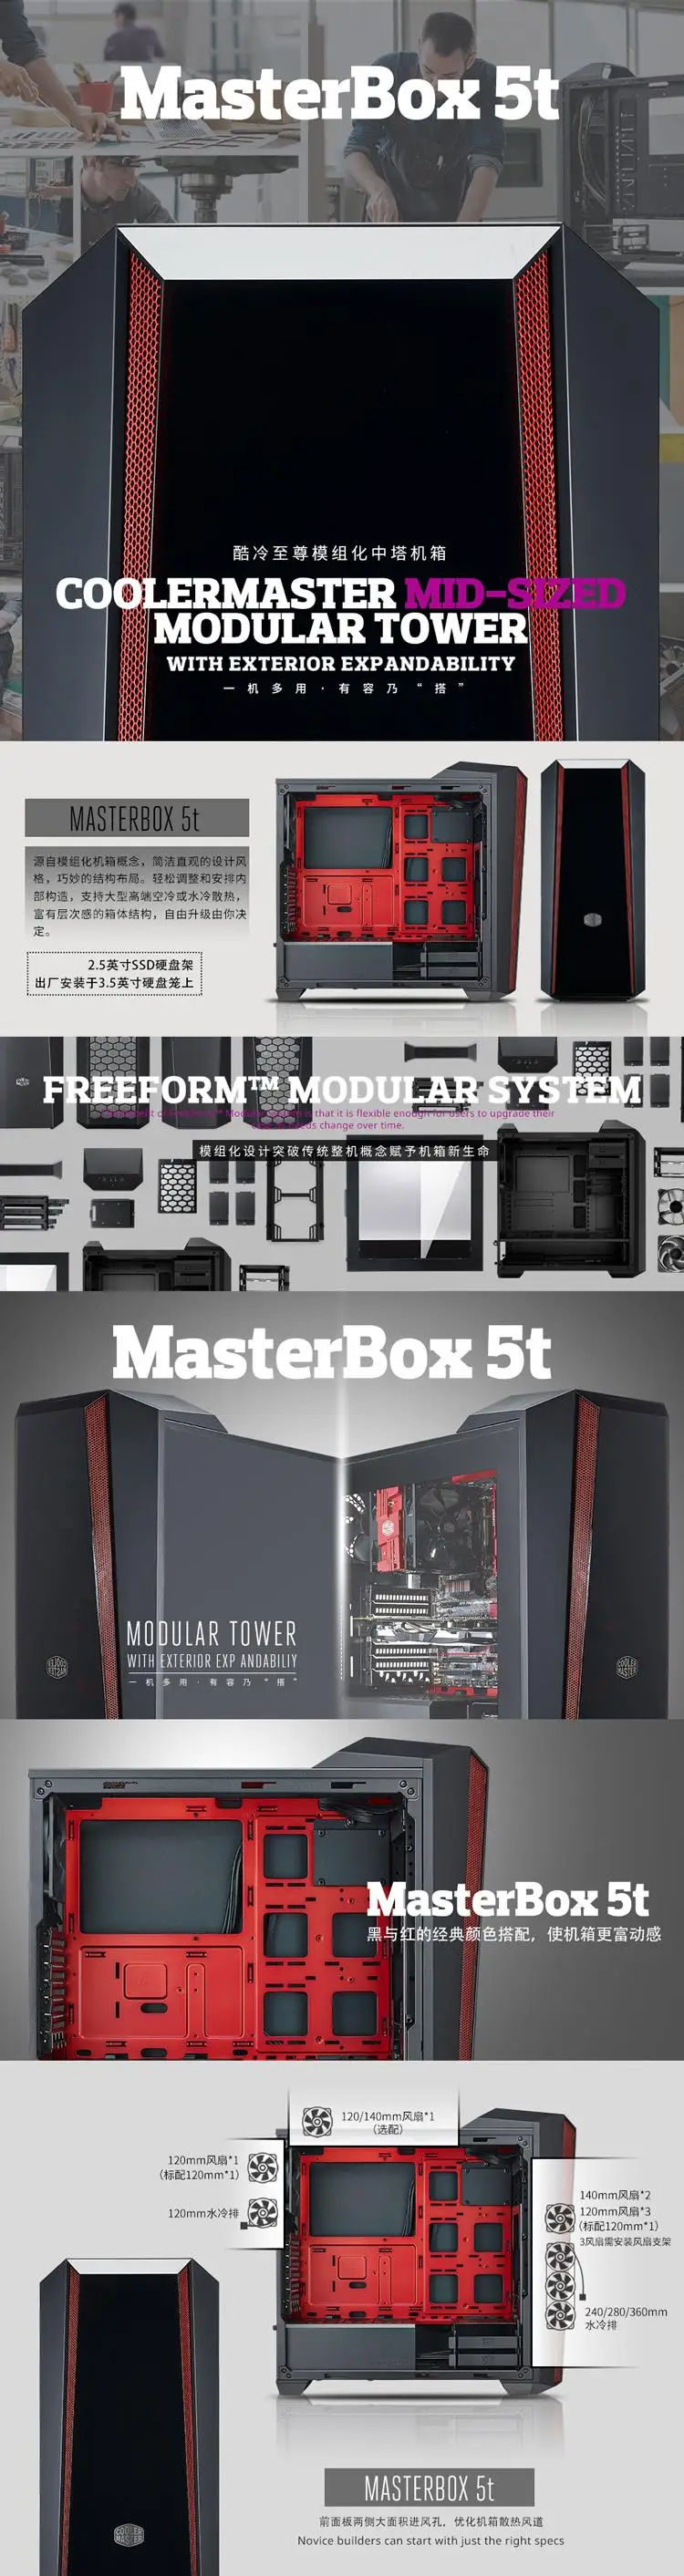 MasterBox 5t черный модульный с водяным охлаждением башня в башня